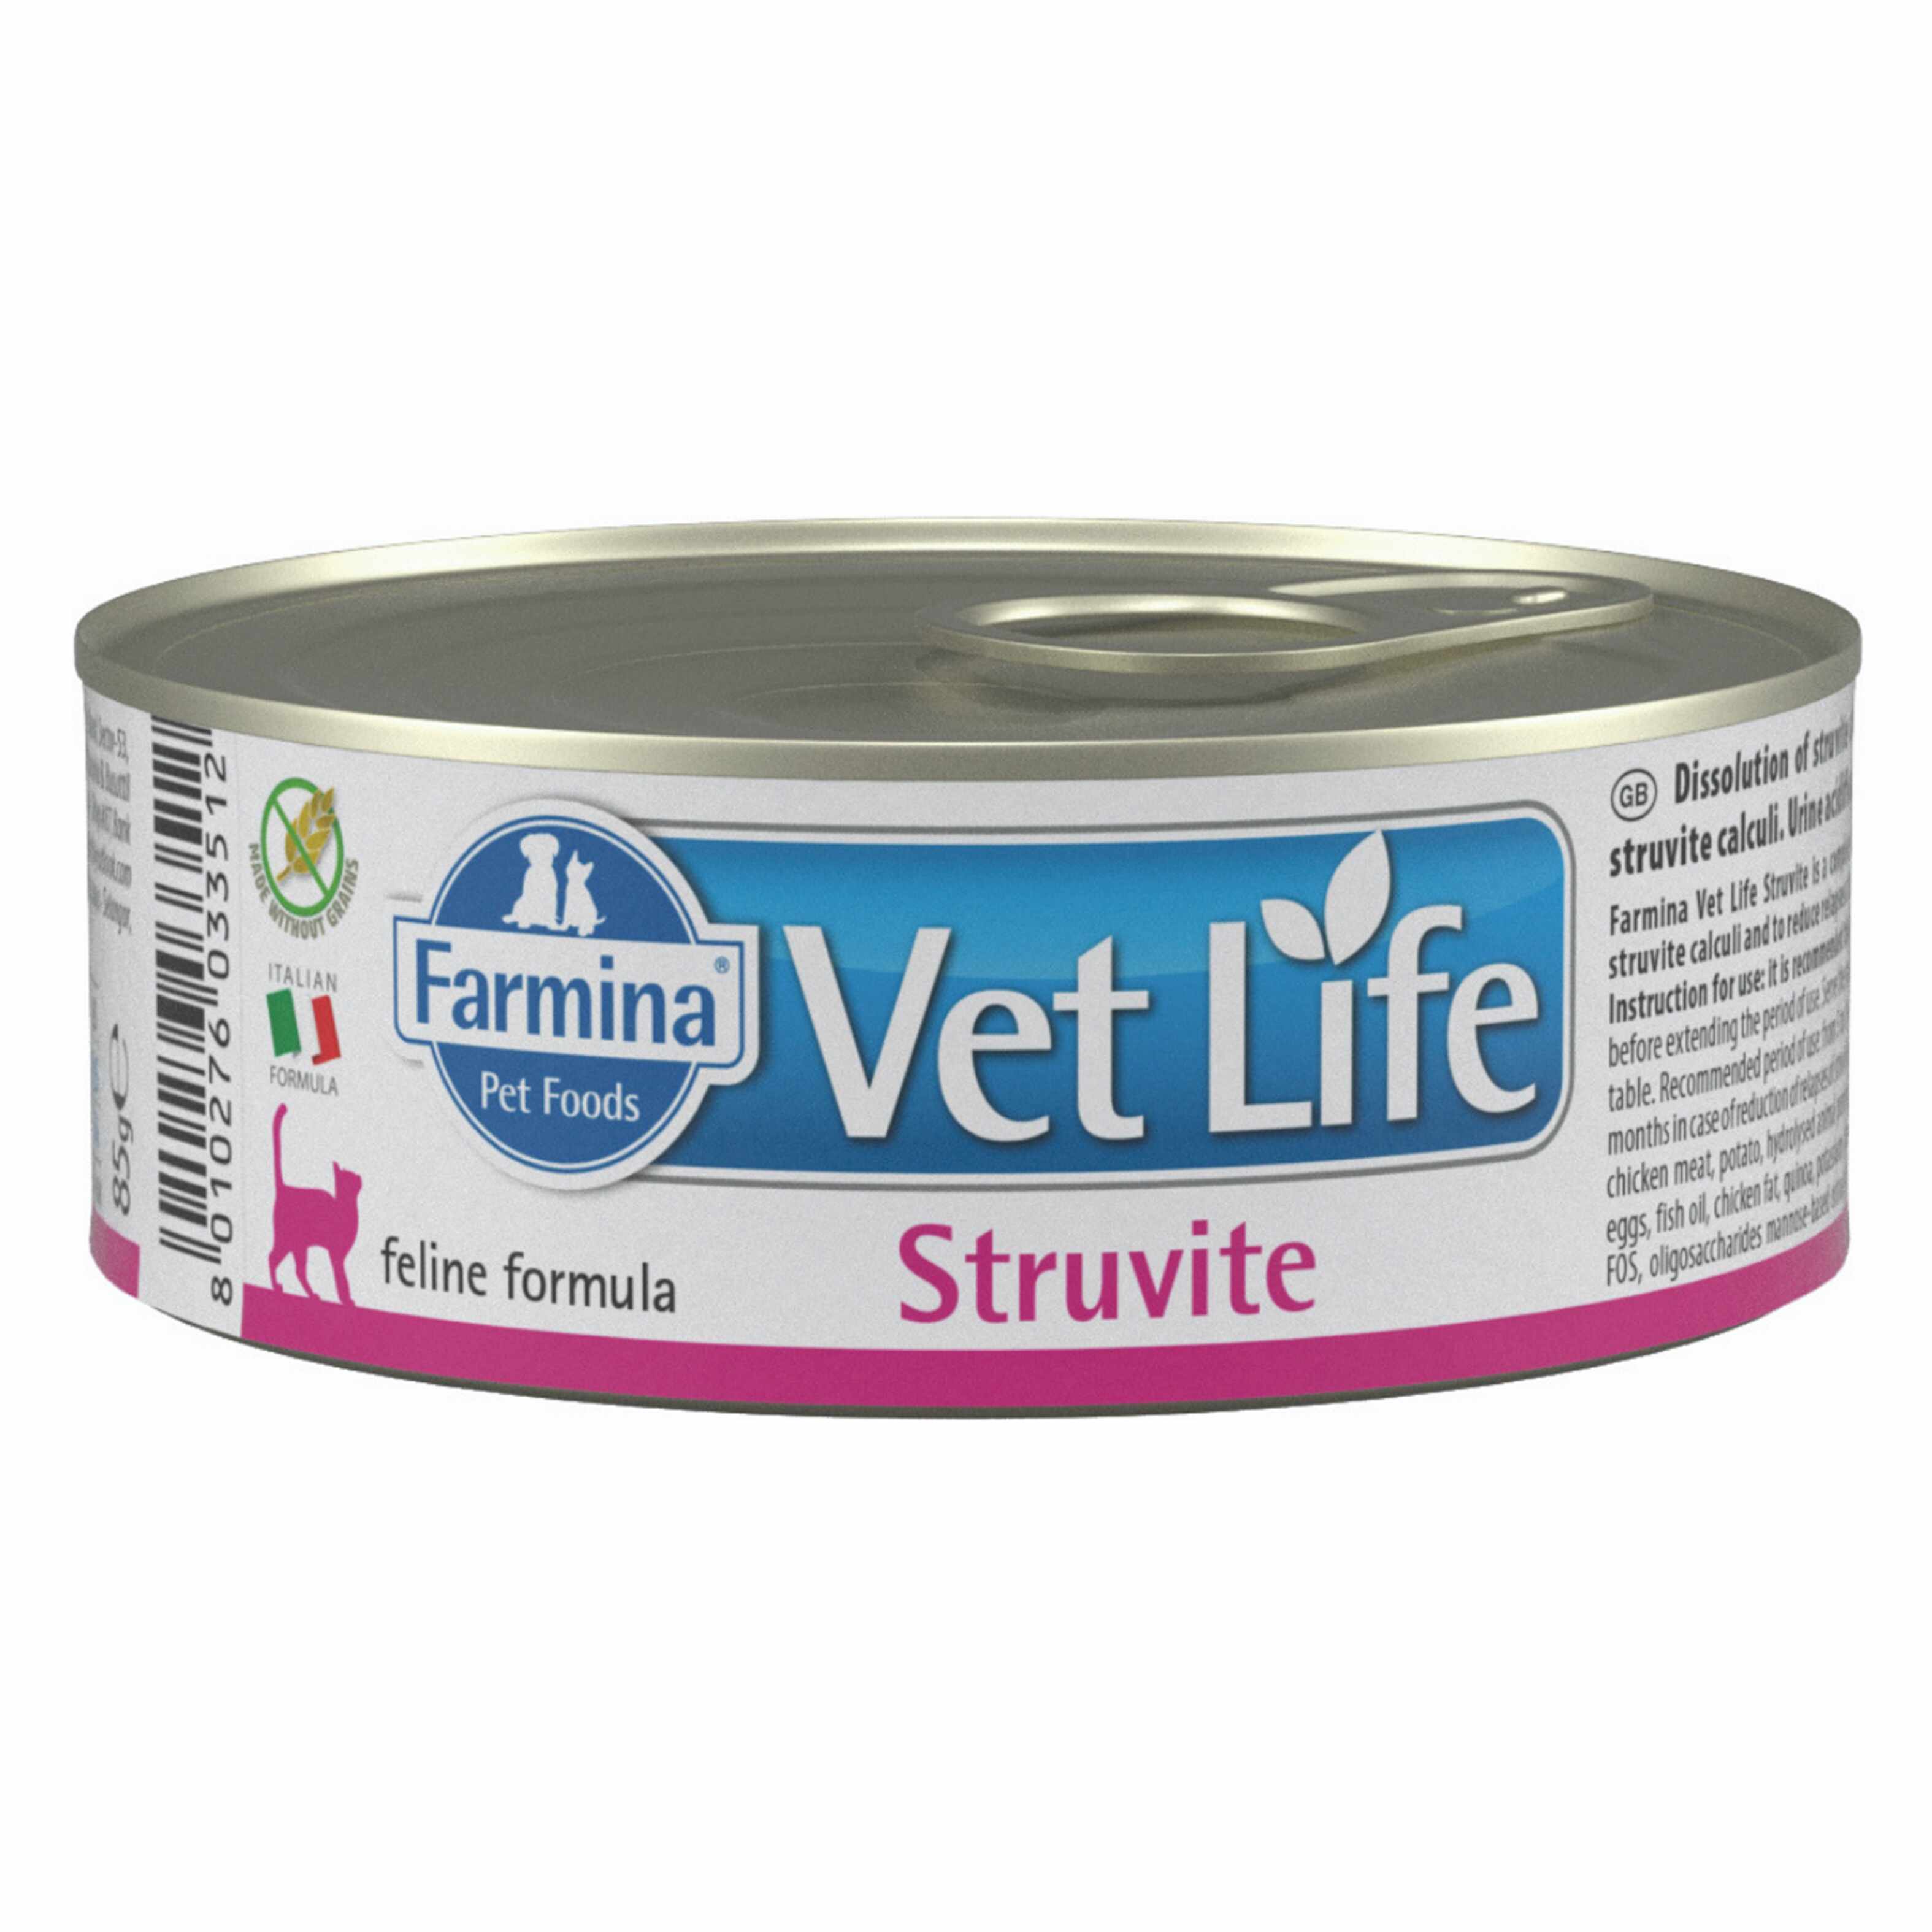 Vet Life Natural Diet Cat Struvite, 85 g